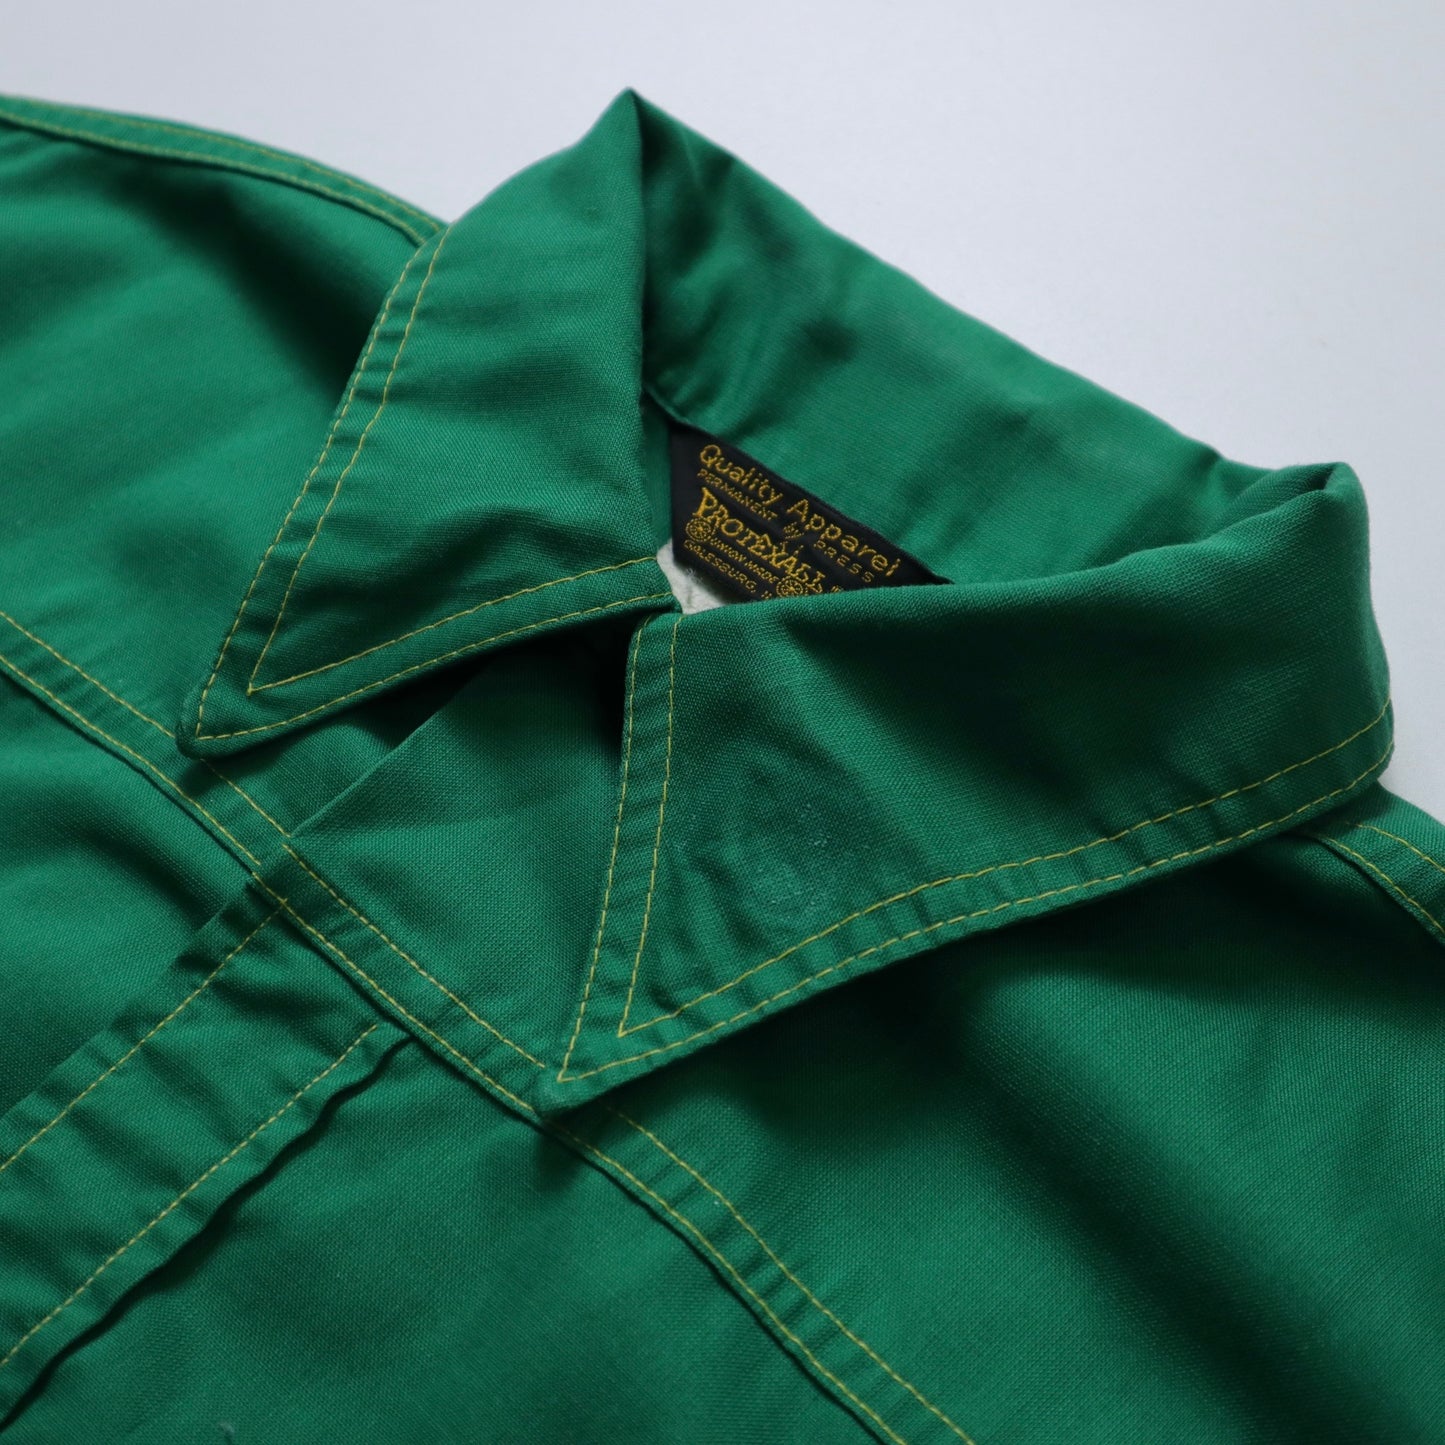 1970s 綠色鎖鍊繡箭領工作襯衫 Union made